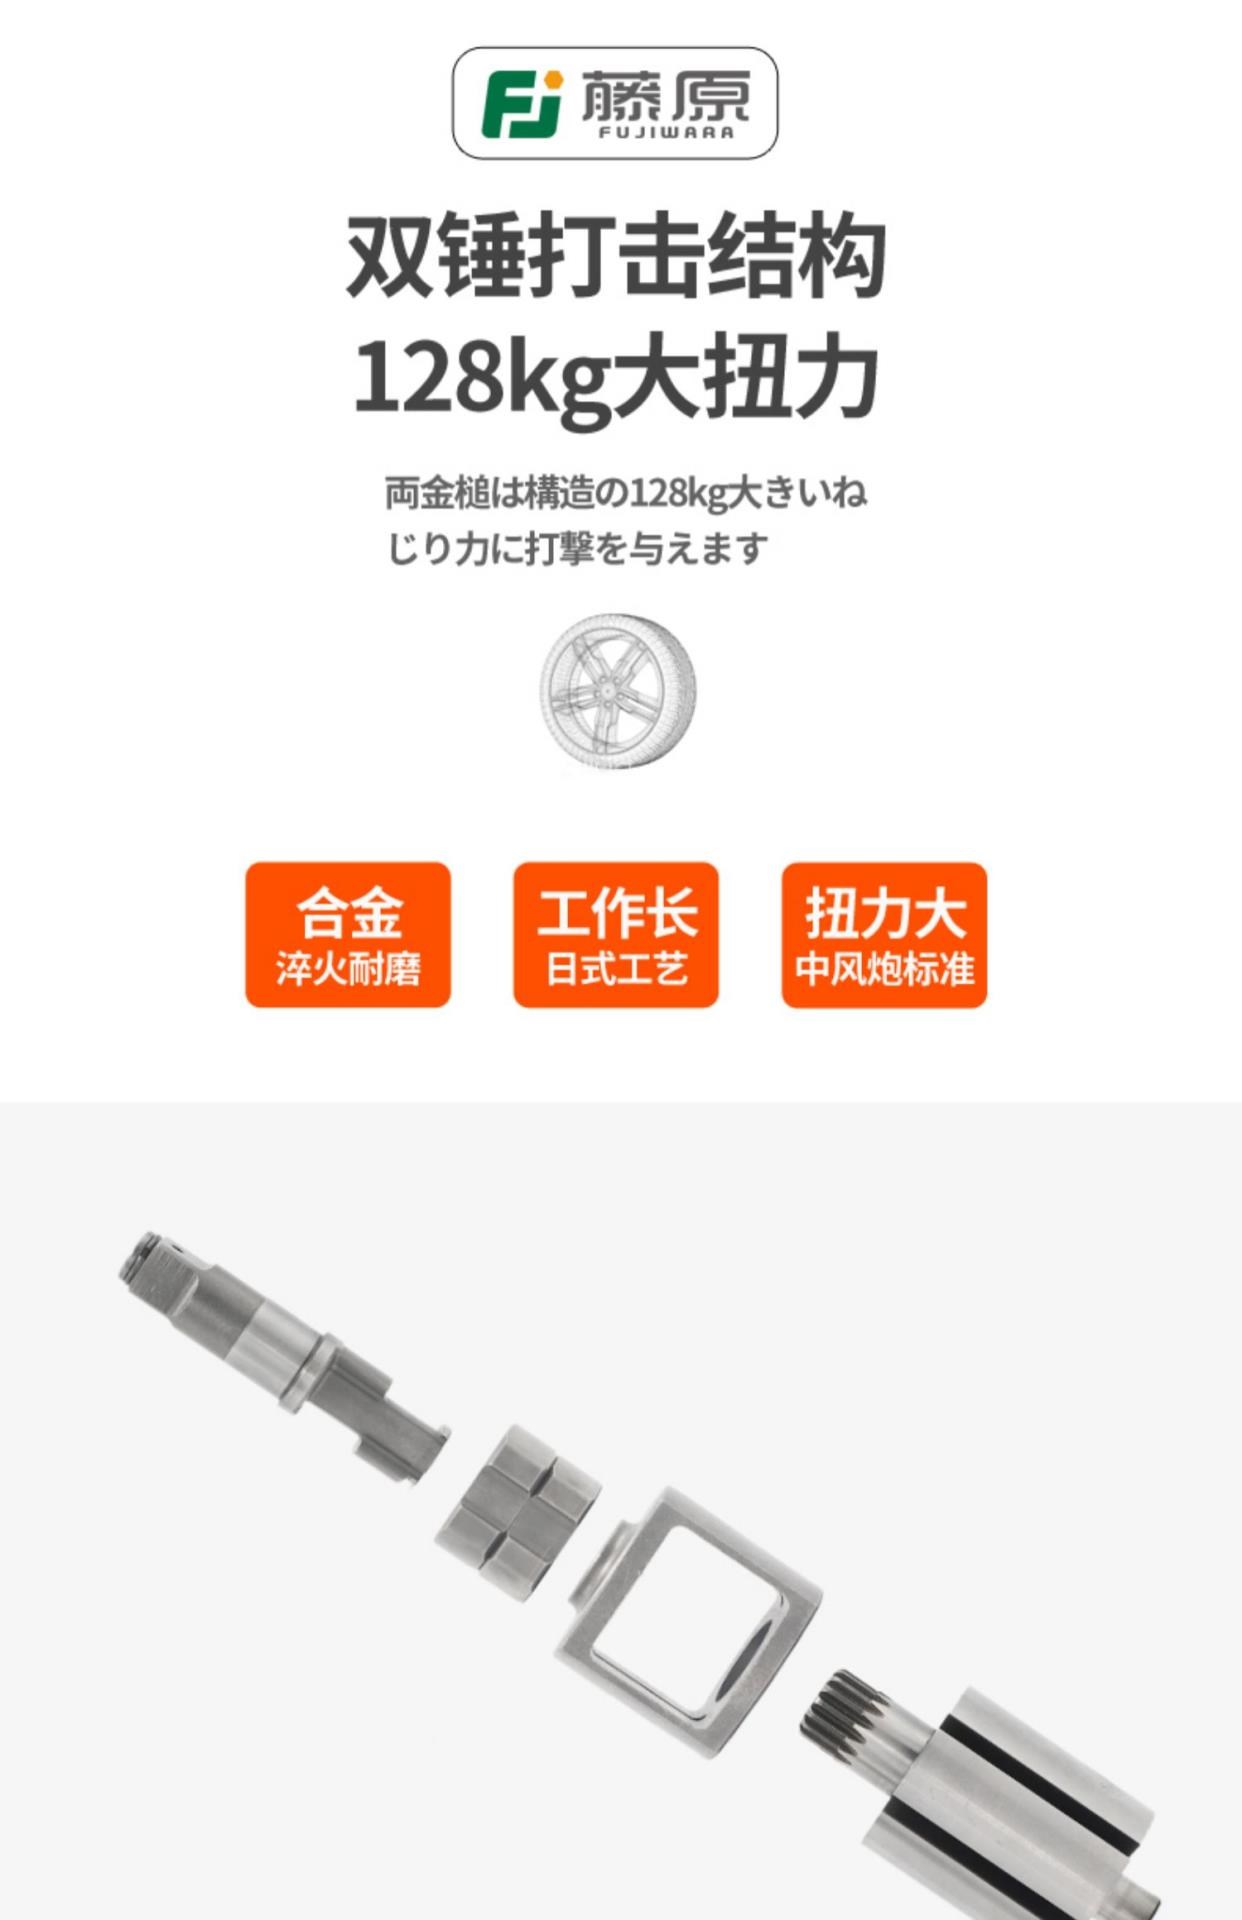 Cờ lê khí nén cấp 1/2 công nghiệp Fujiwara 128KG Máy khoan cắt nhỏ Công cụ khí nén Dụng cụ khí nén Máy cắt tác động bằng khí nén - Công cụ điện khí nén